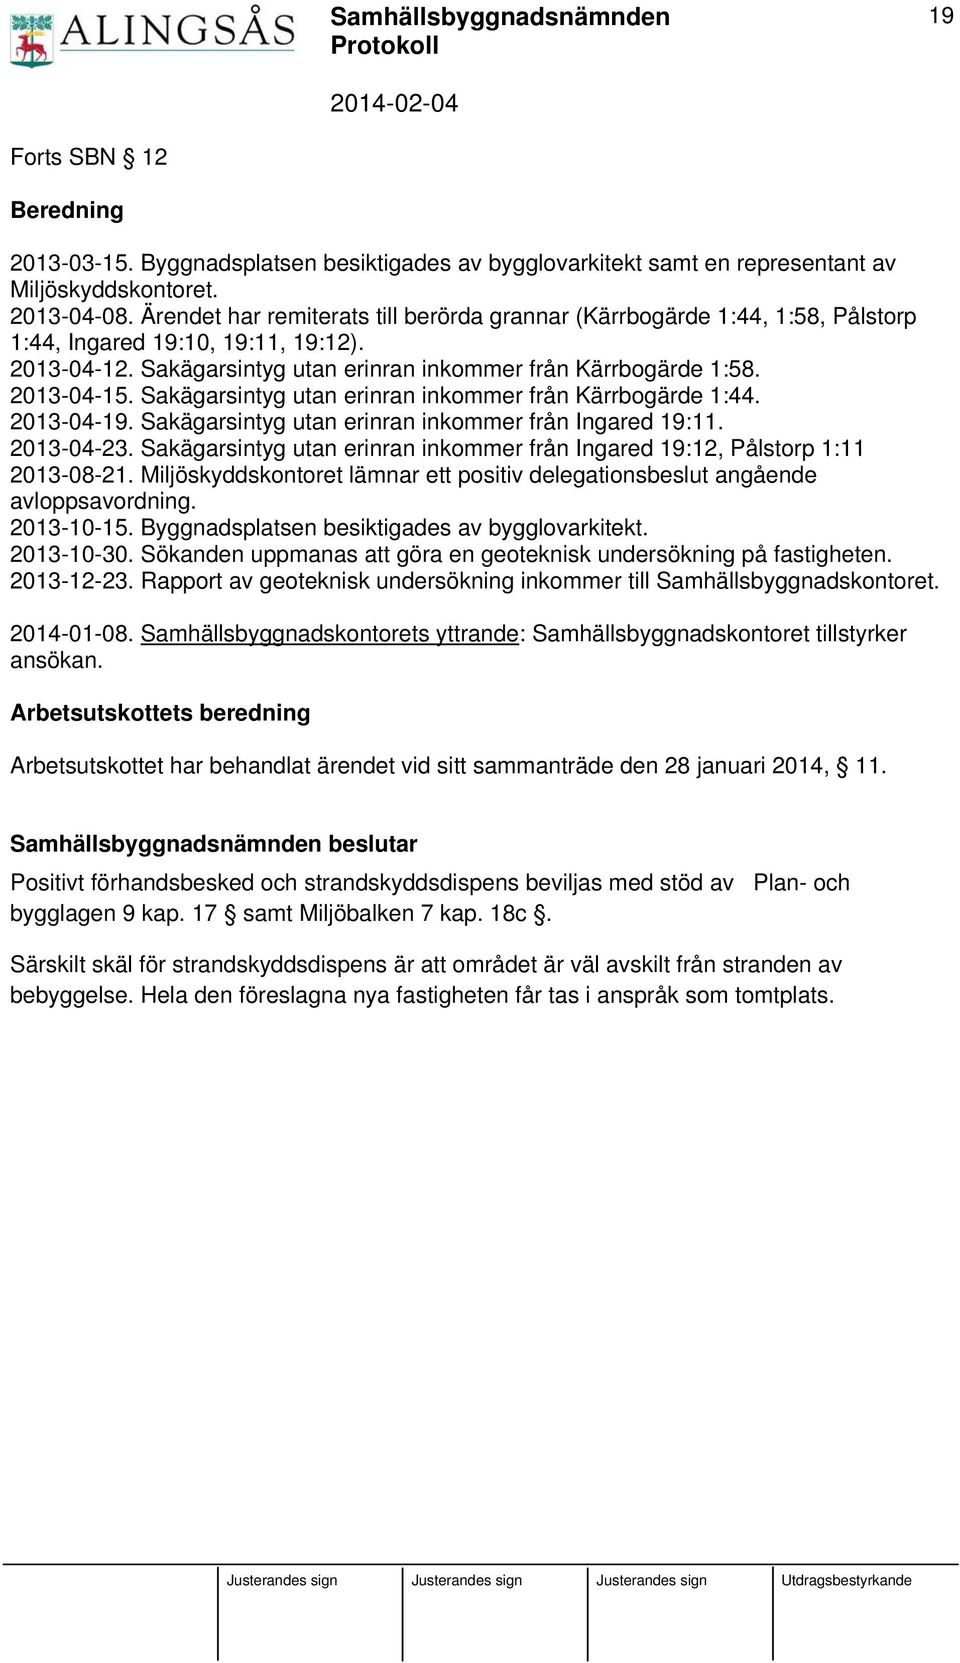 Sakägarsintyg utan erinran inkommer från Kärrbogärde 1:44. 2013-04-19. Sakägarsintyg utan erinran inkommer från Ingared 19:11. 2013-04-23.